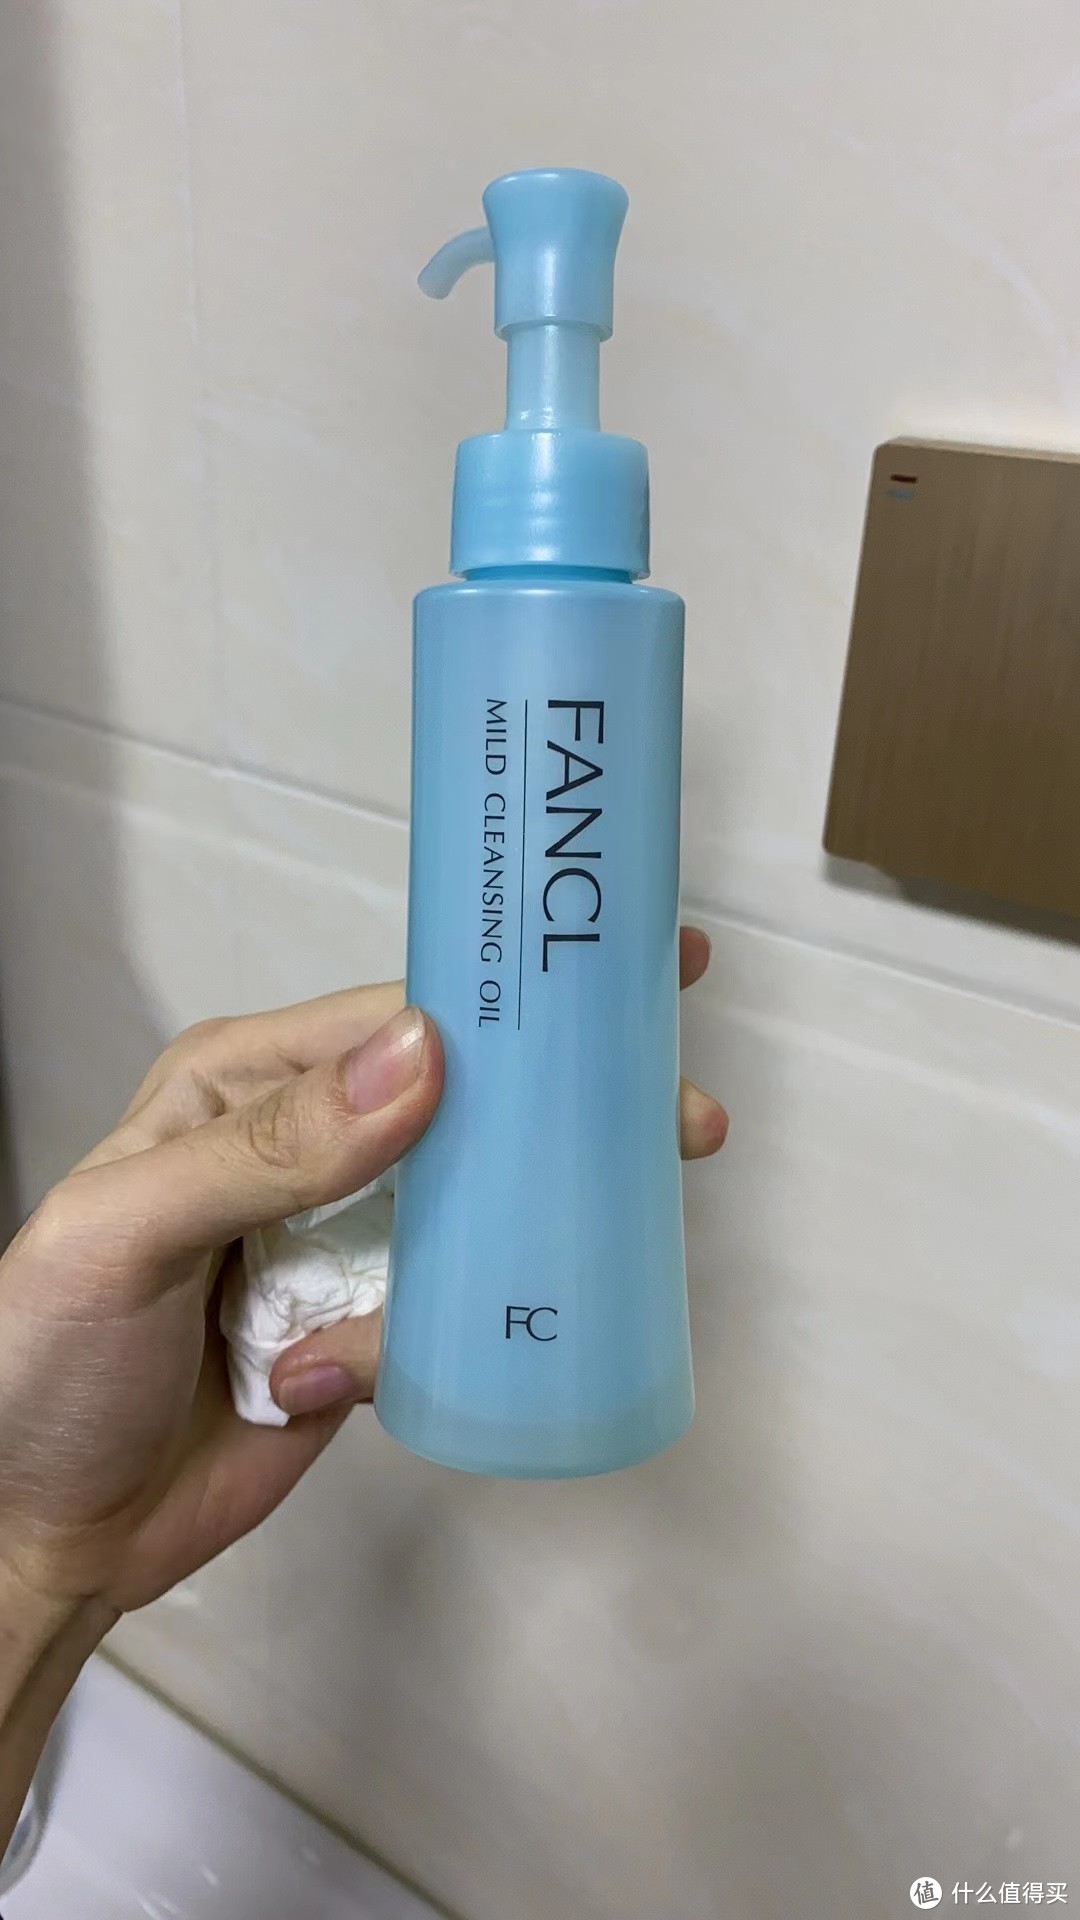 自用强烈推荐 Fancl 卸妆油 